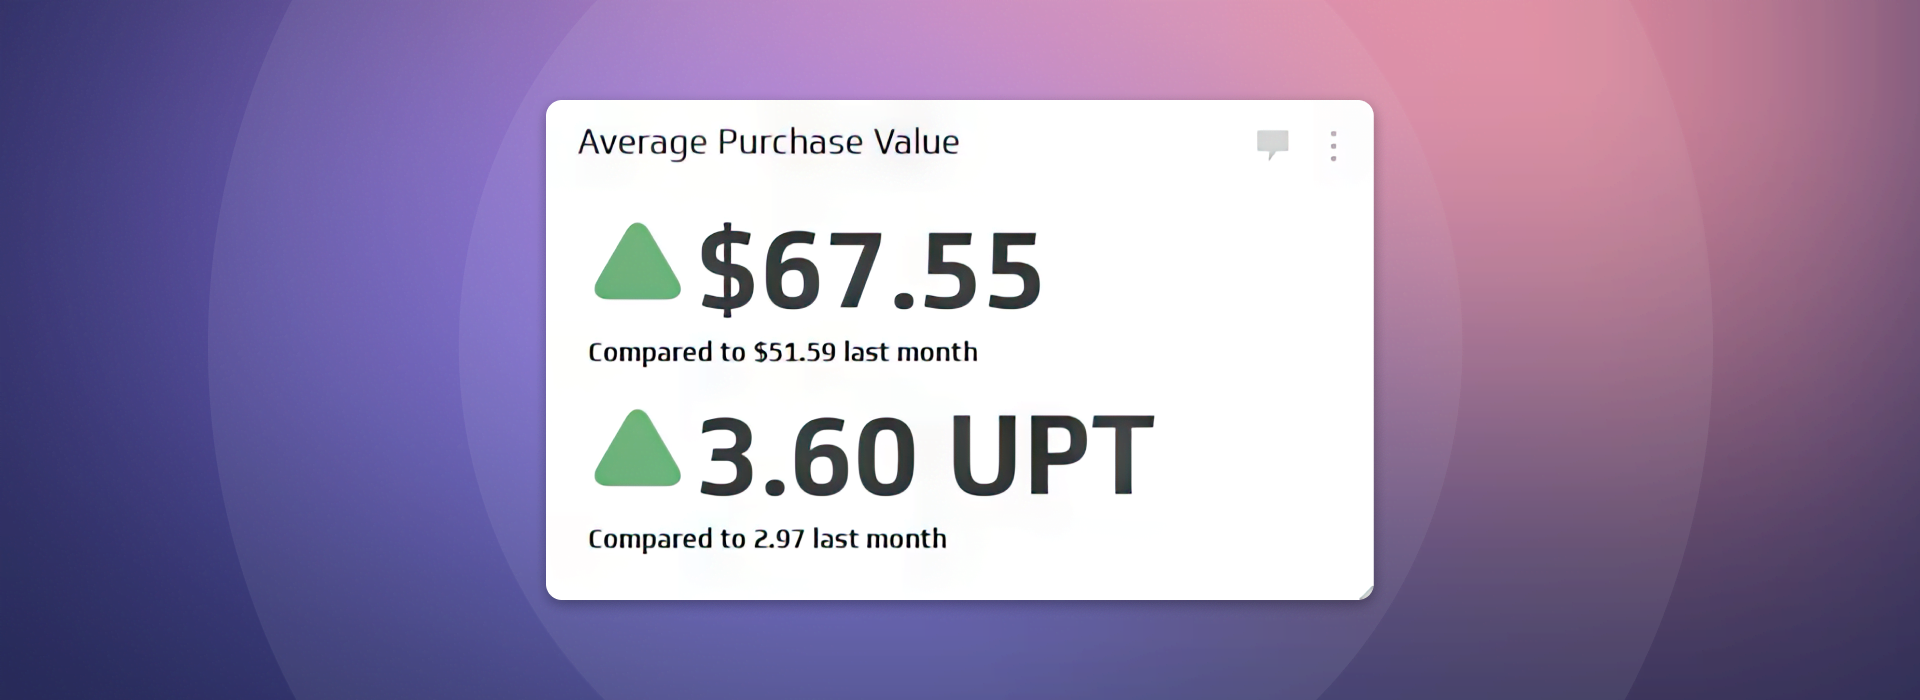 Average Purchase Value